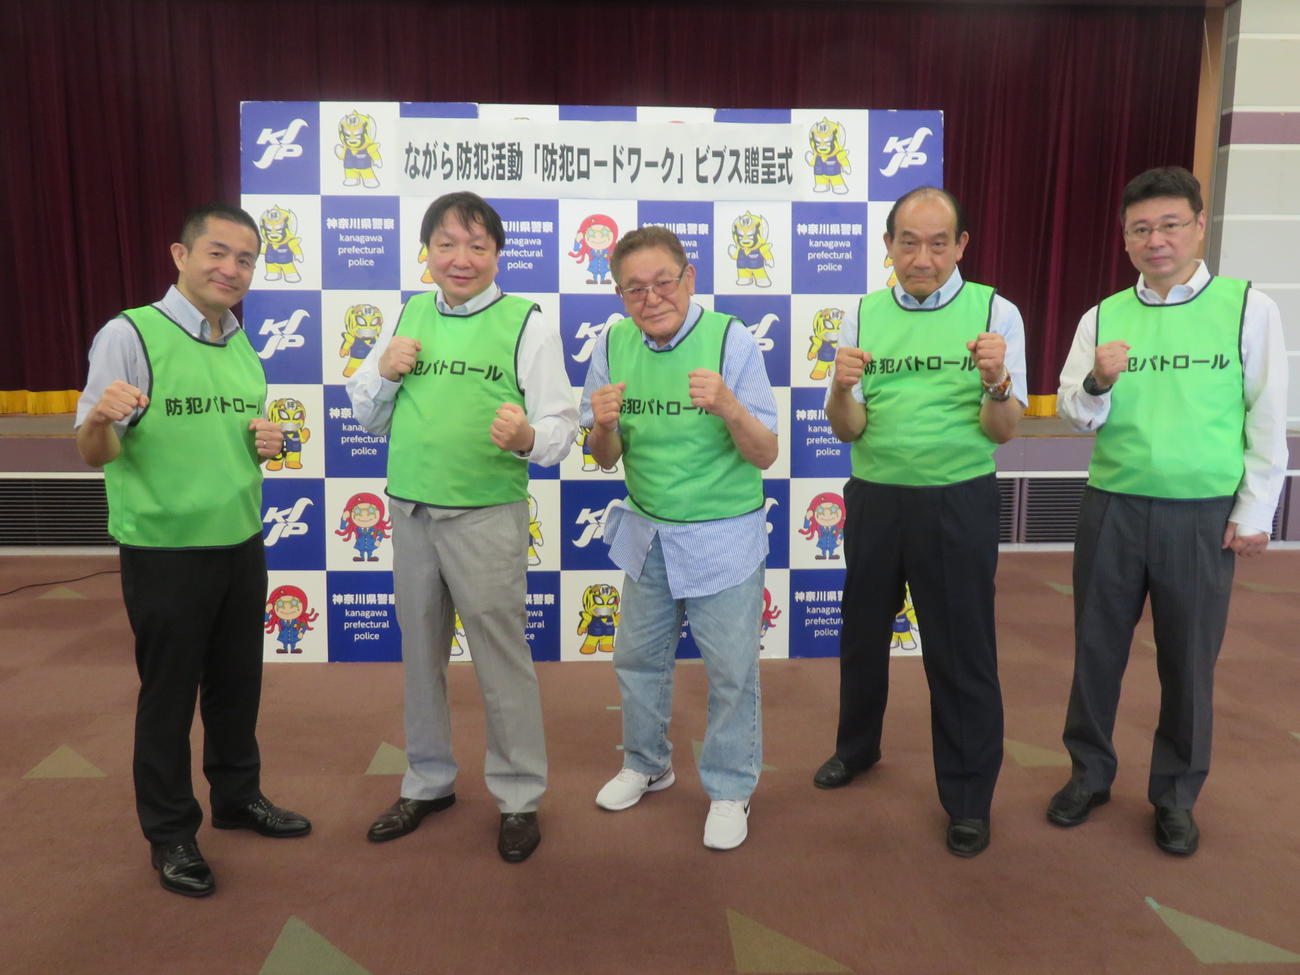 神奈川県警で開催されたながら防犯活動「防犯ロードワーク」ビブス贈呈式に出席した同県内ボクシングジム代表者5人